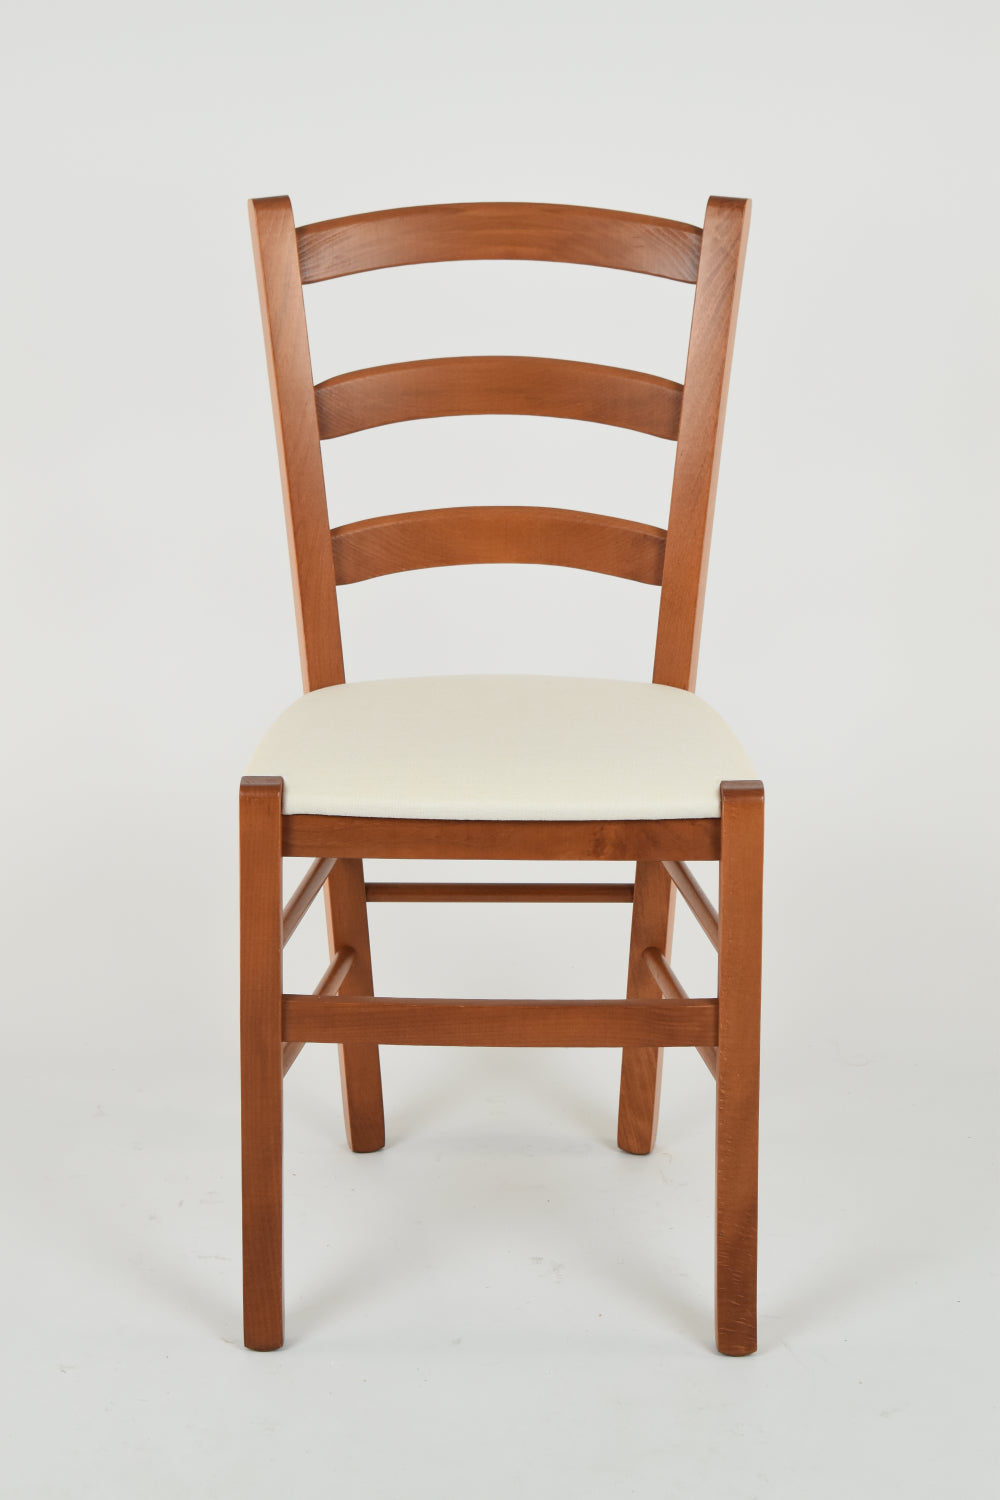 Tommychairs - Set 2 sillas de Cocina y Comedor Venice, Estructura en Madera de Haya Color Cerezo y Asiento tapizado en Tejido Color Marfil